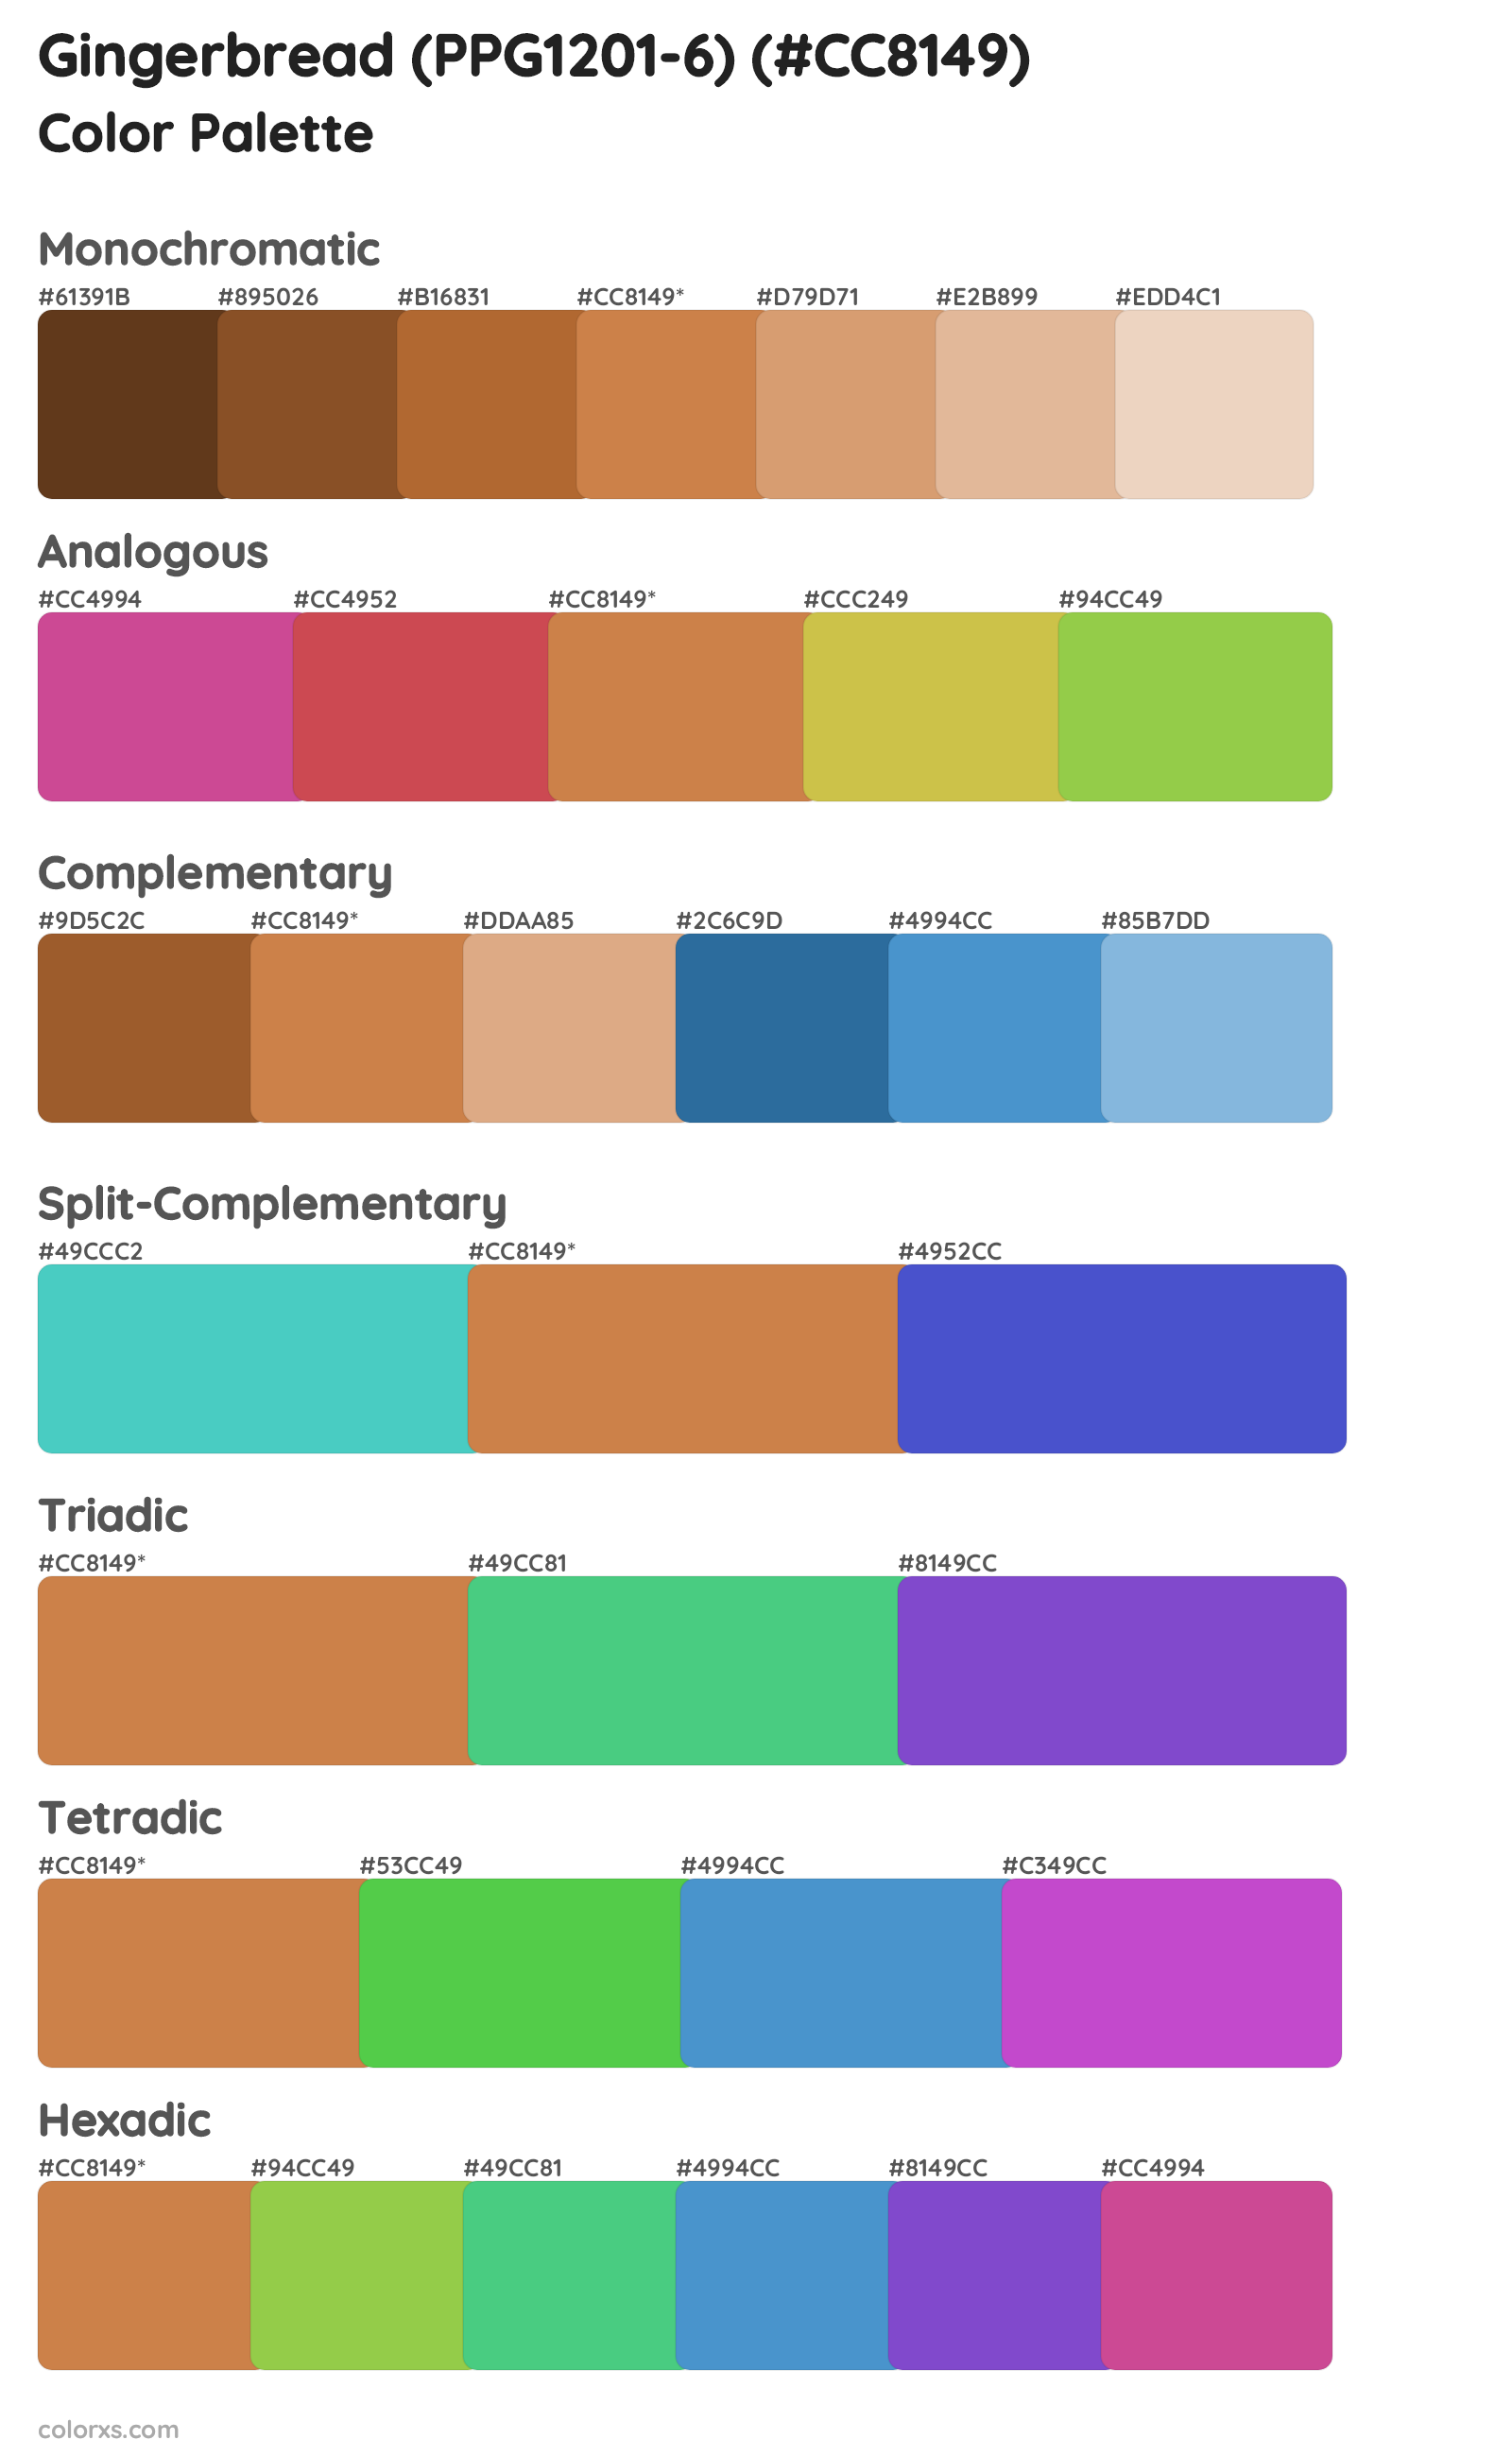 Gingerbread (PPG1201-6) Color Scheme Palettes